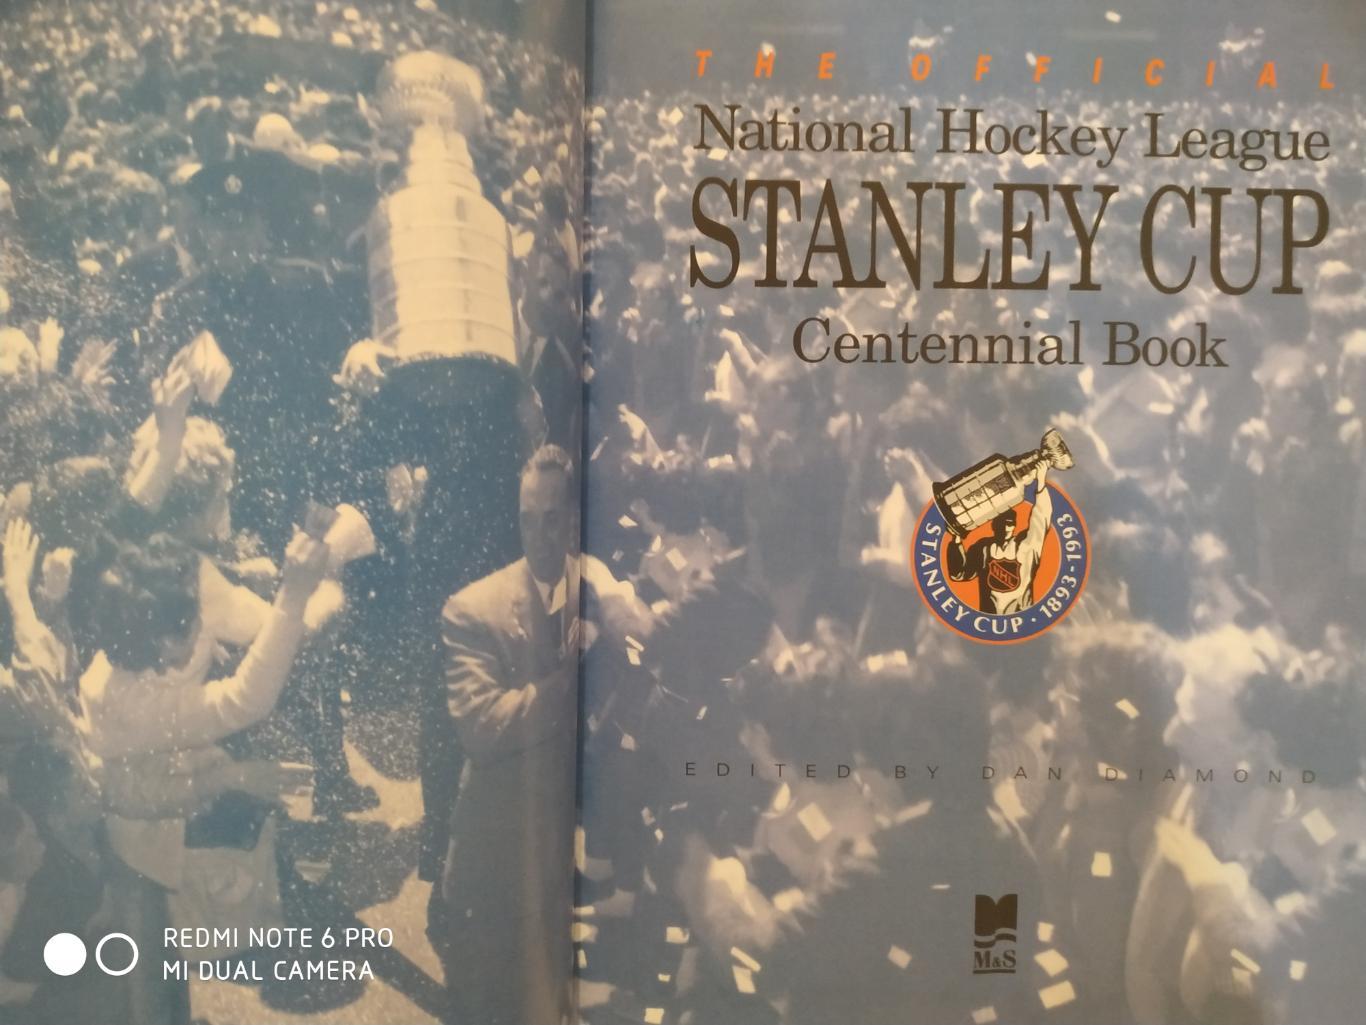 КНИГА АЛЬБОМ НХЛ 1893-1993 NHL STANLEY CUP CENTENNIAL BOOK by DAN DIAMOND 1